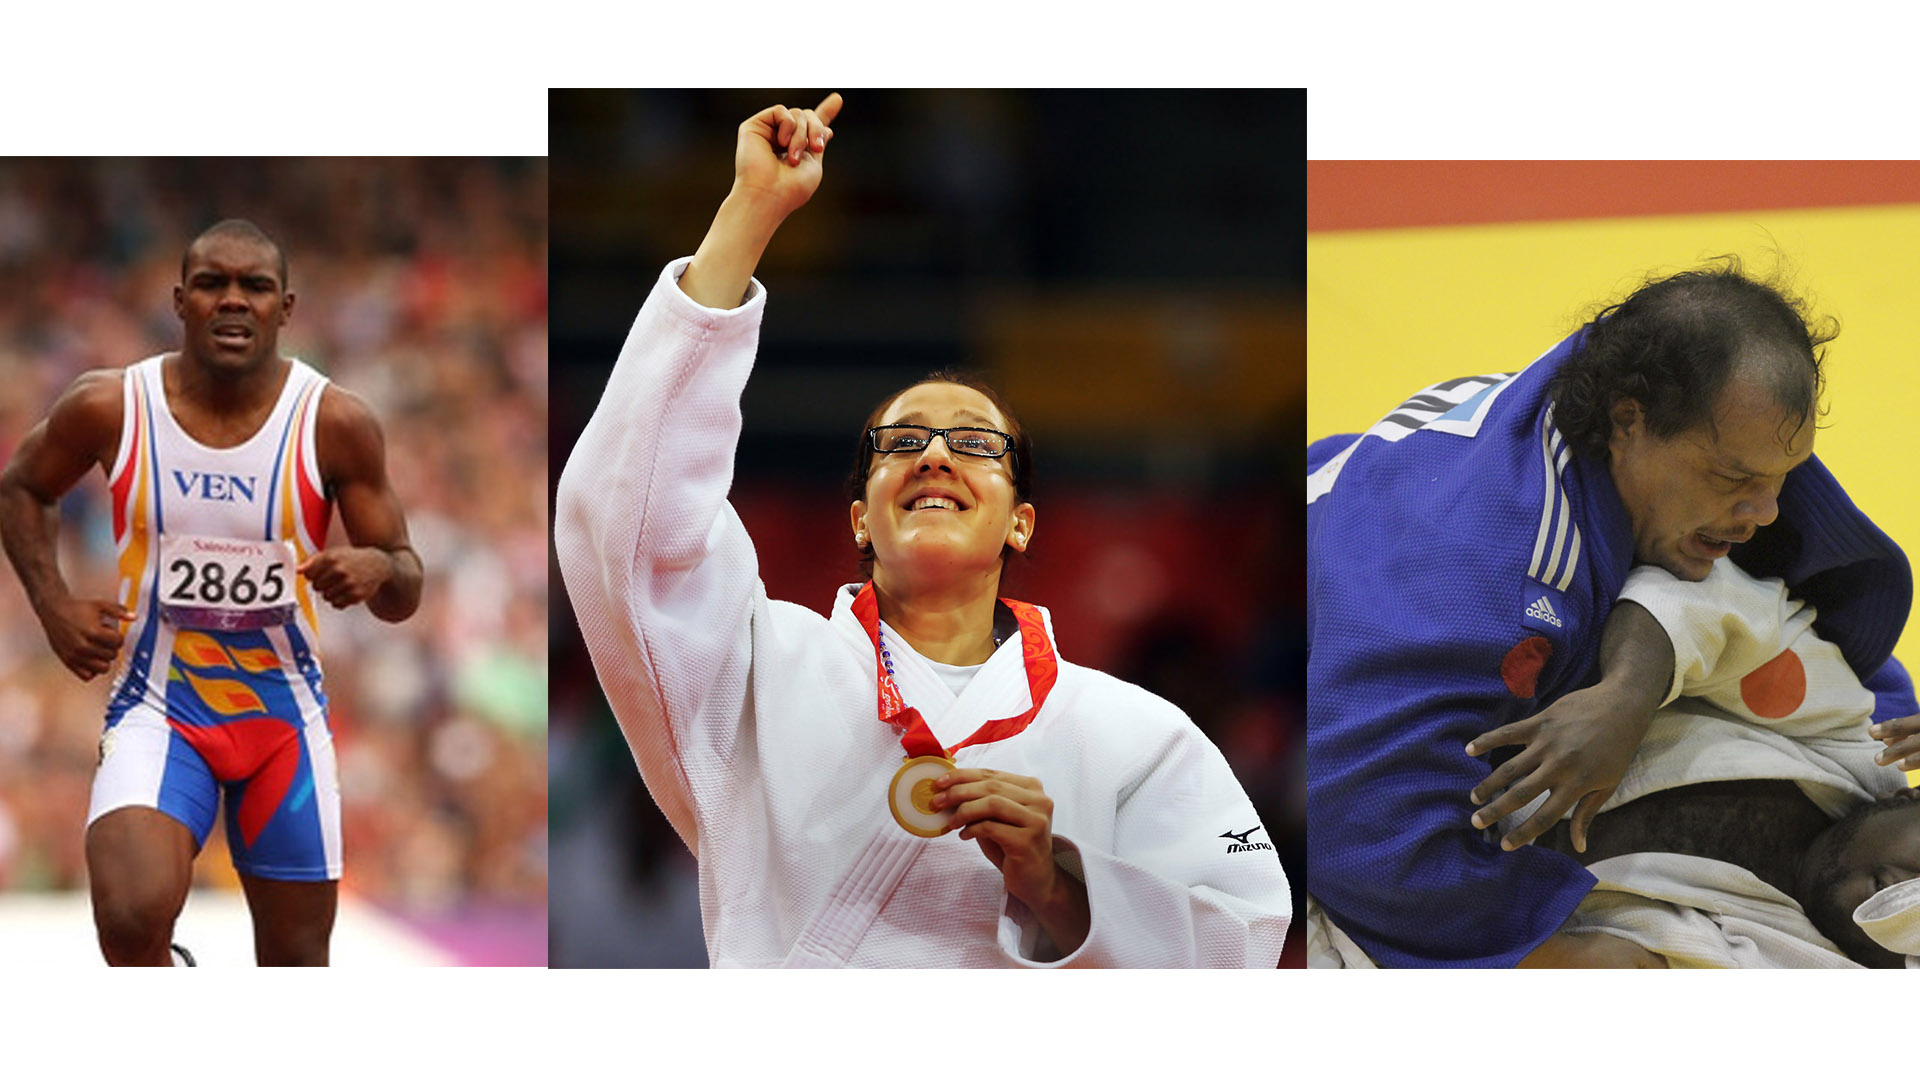 La judoca Naomi Soazo ganó la tercera medalla de bronce para Venezuela en los Juegos Paralímpicos Río 2016